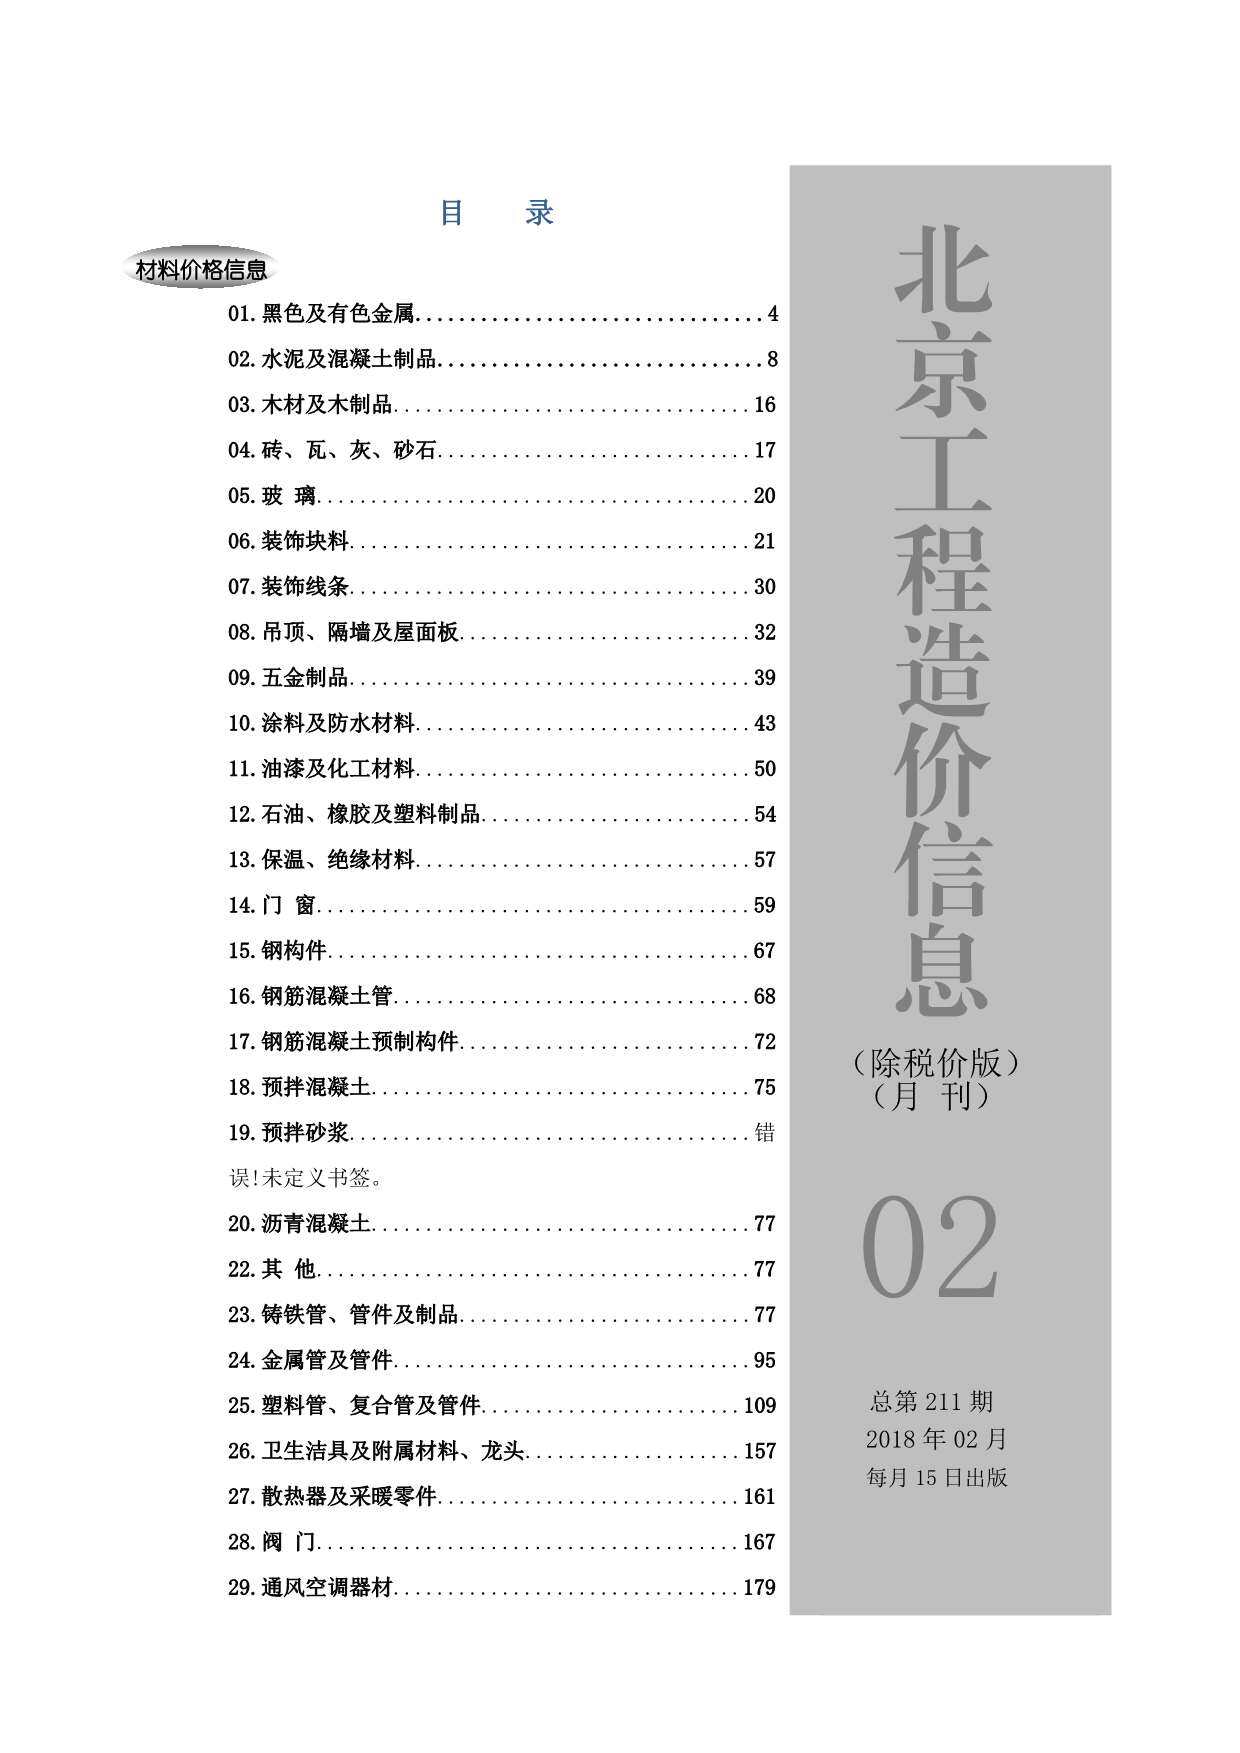 2018年2期北京市除税价版工程造价信息期刊